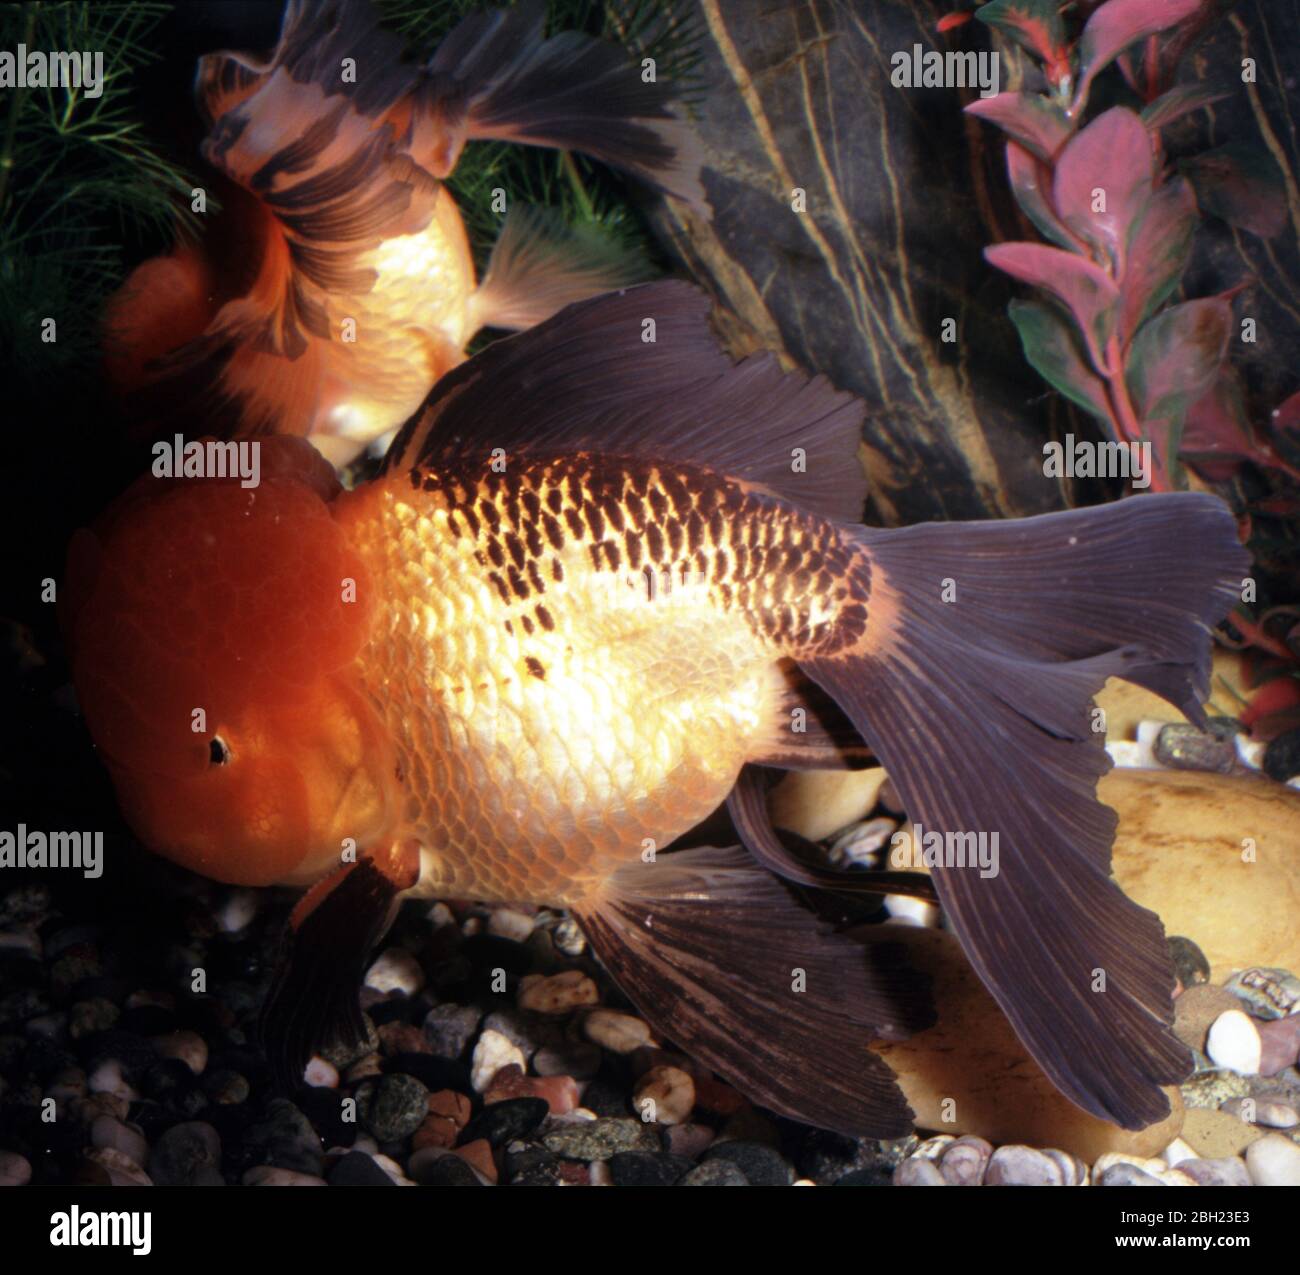 Chinese oranda (Hi-Cap) goldfish (Carassius auratus) Stock Photo